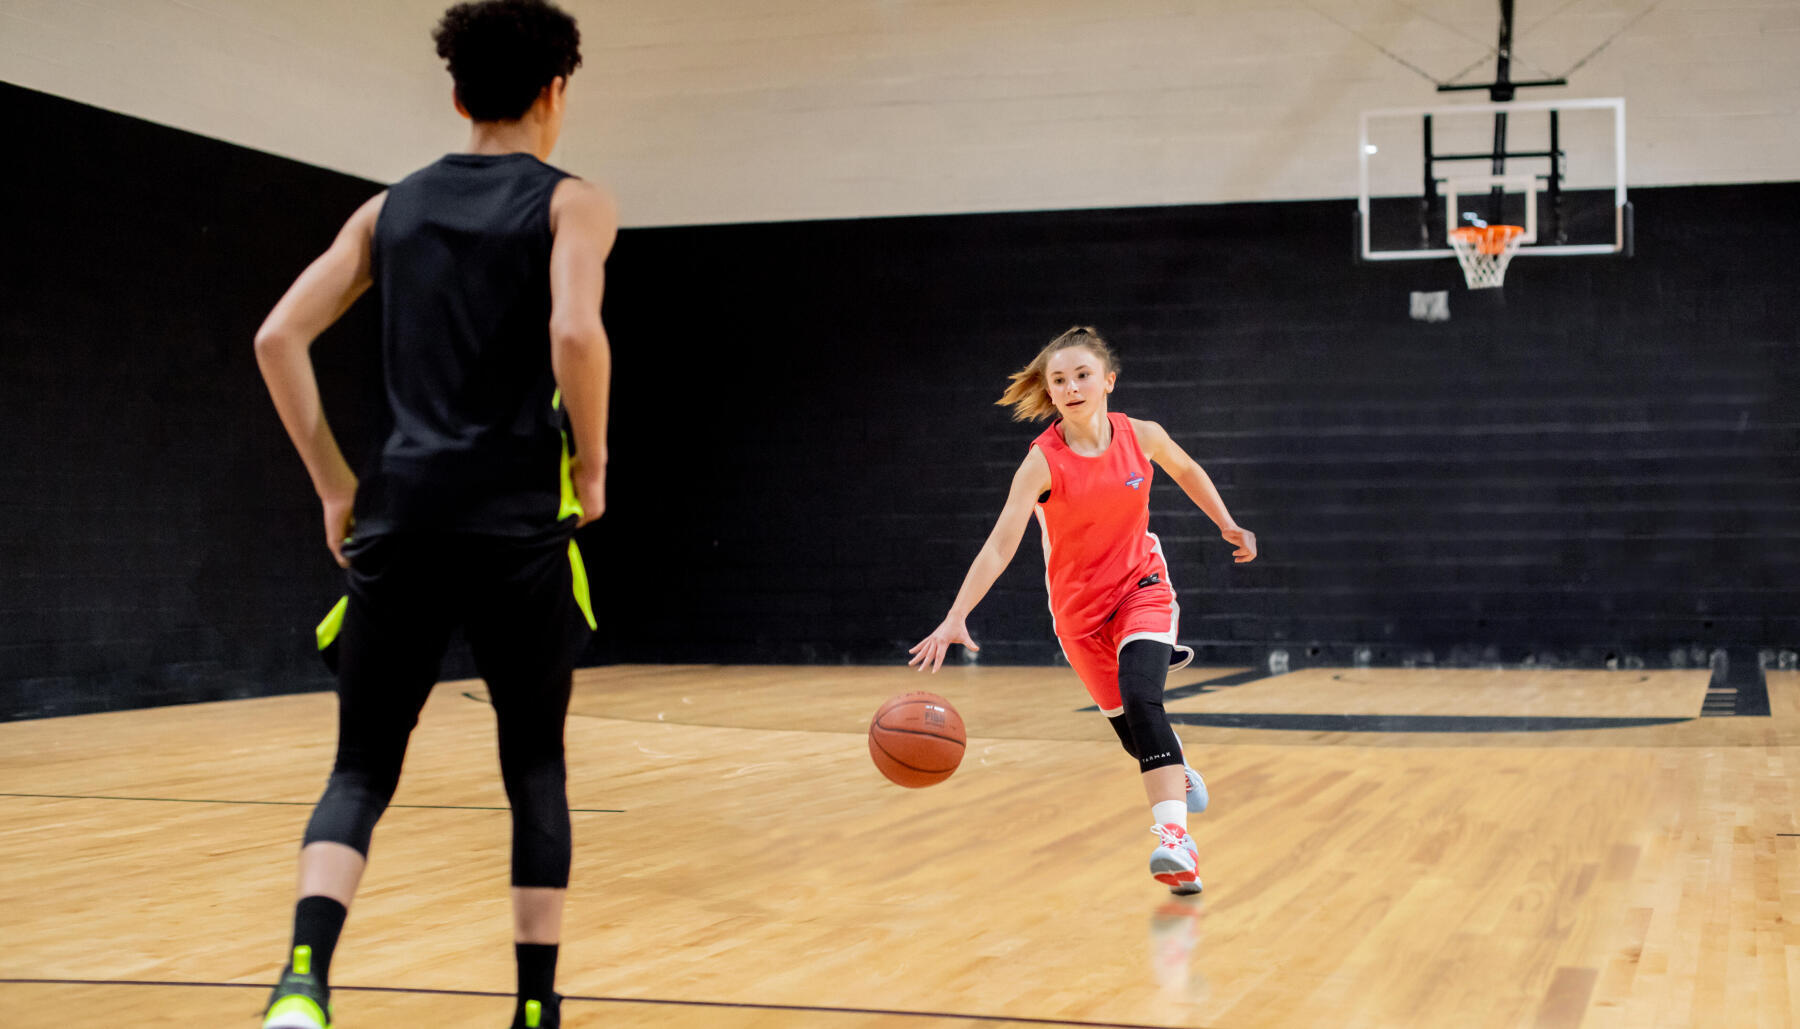  ¿Cuáles son las etapas evolutivas en el baloncesto para nuestros niño